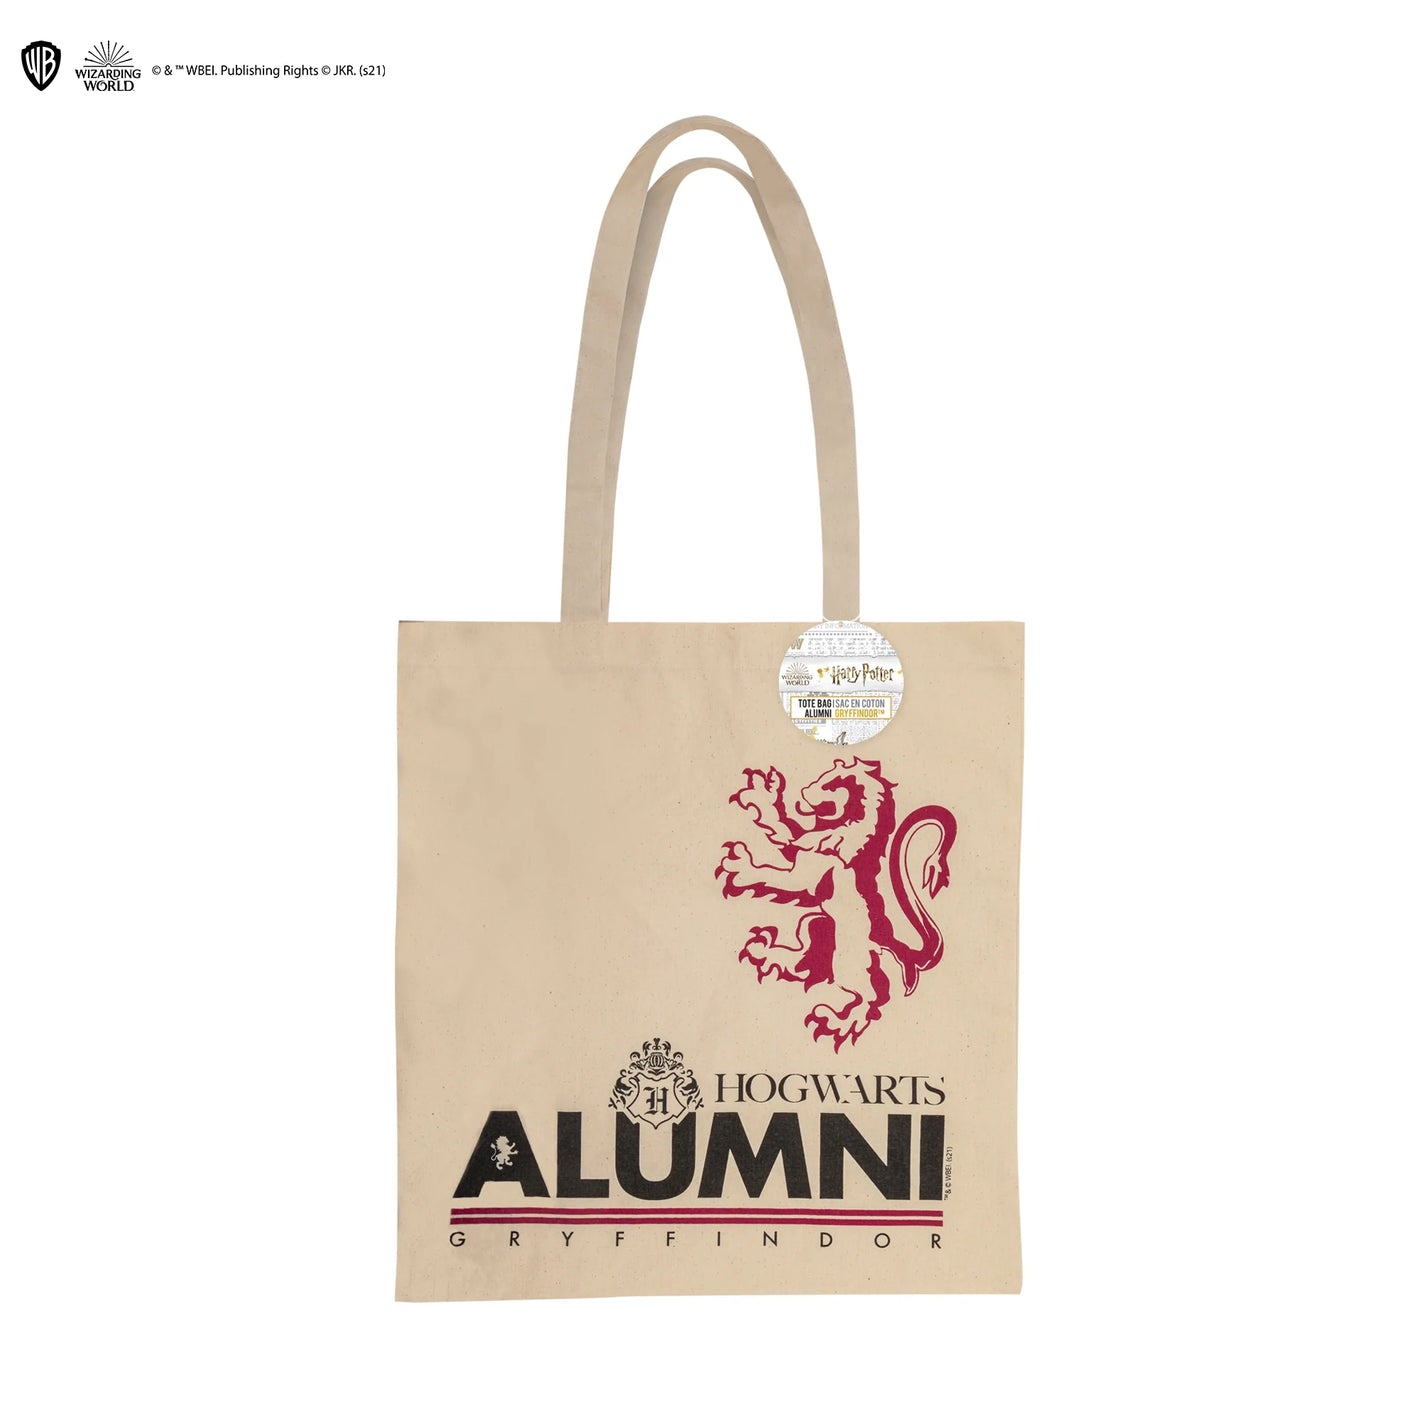 Gryffindor Alumni Tote Bag